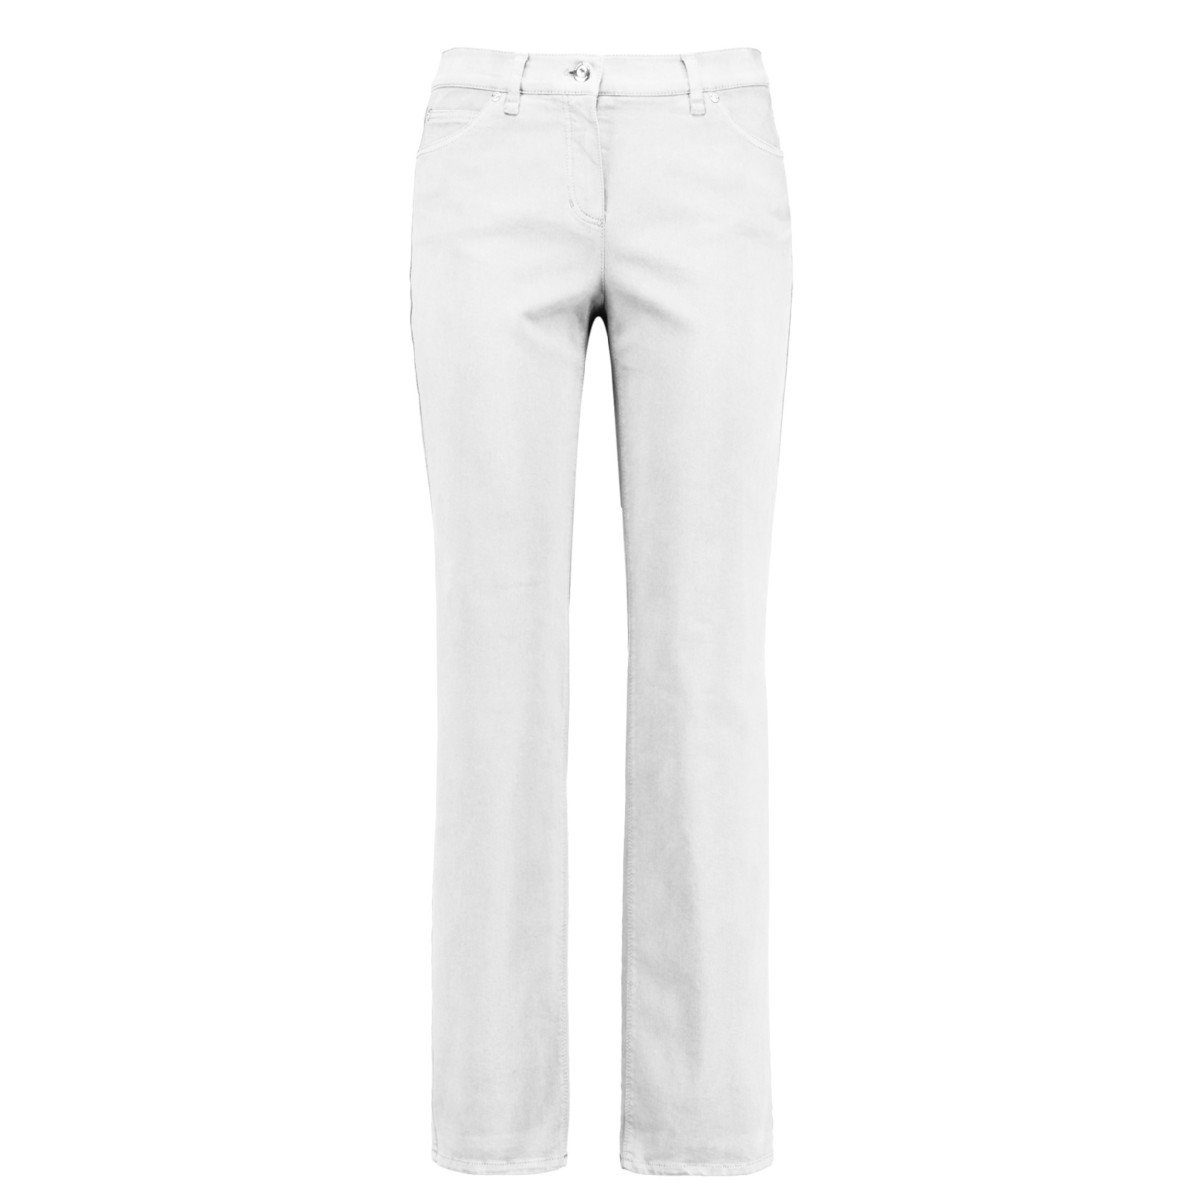 GERRY WEBER 5-Pocket-Jeans »Danny Comfort Fit 92315-67830« COMFORT FIT